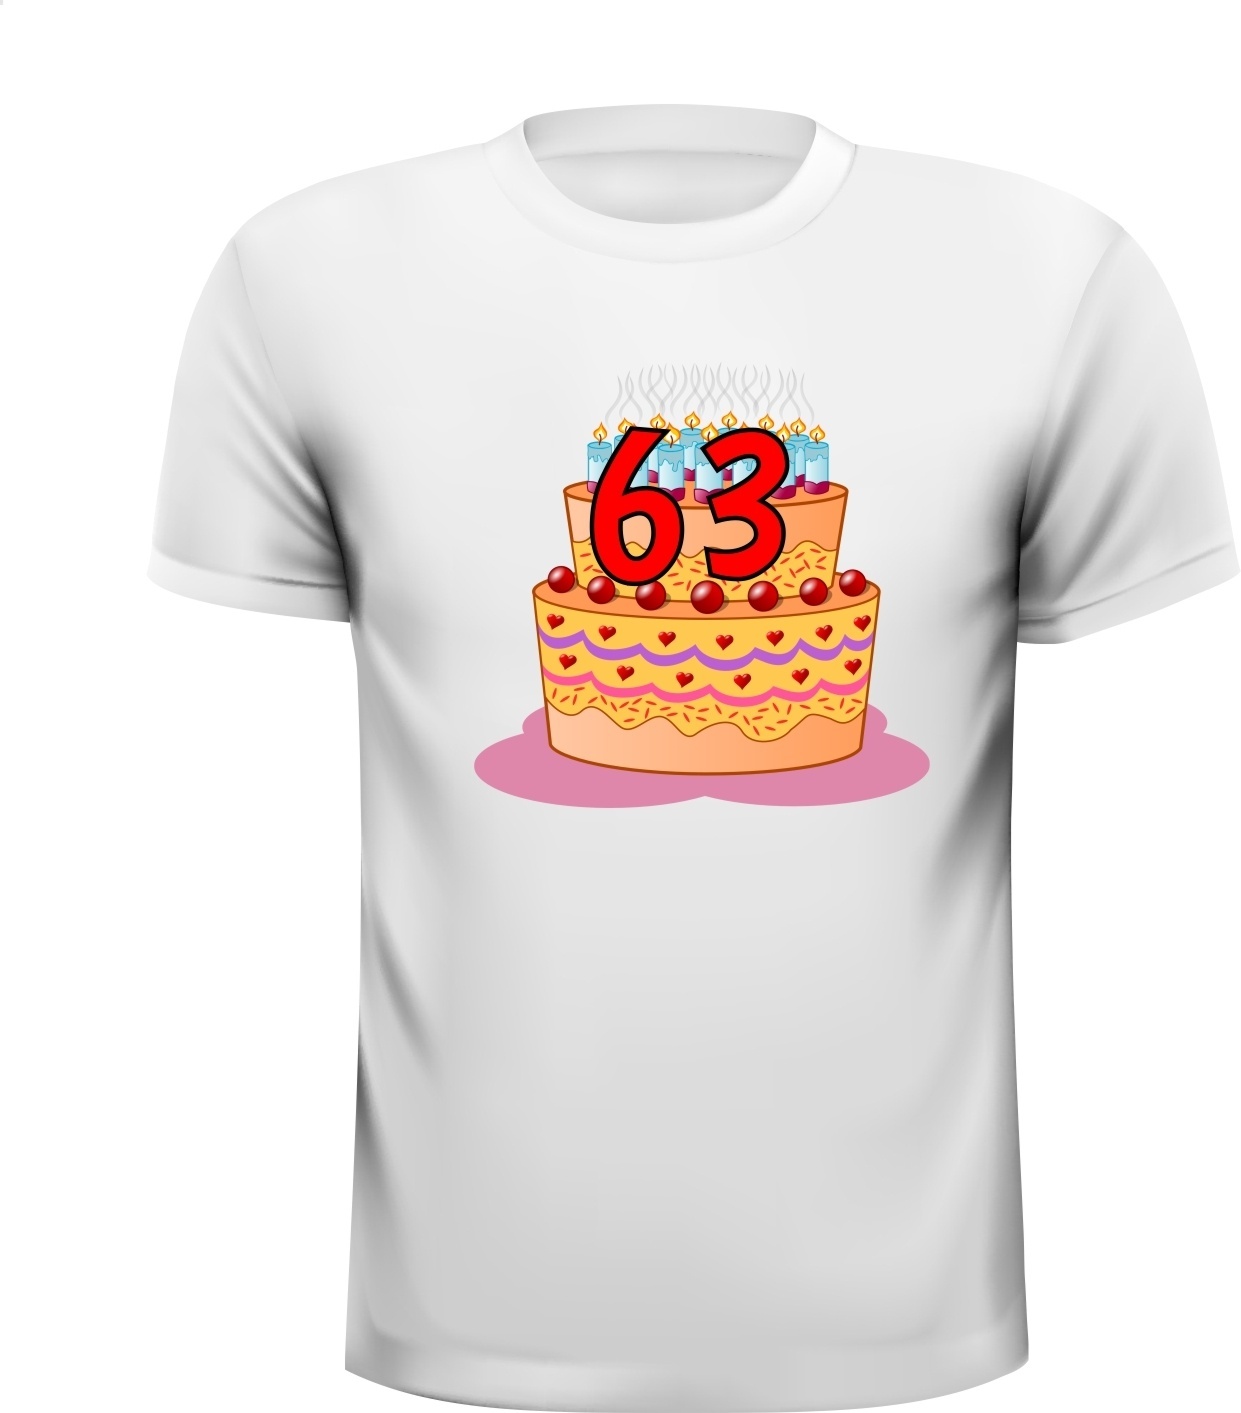 Leuk verjaardag shirt voor een birthday van 63 jaar 